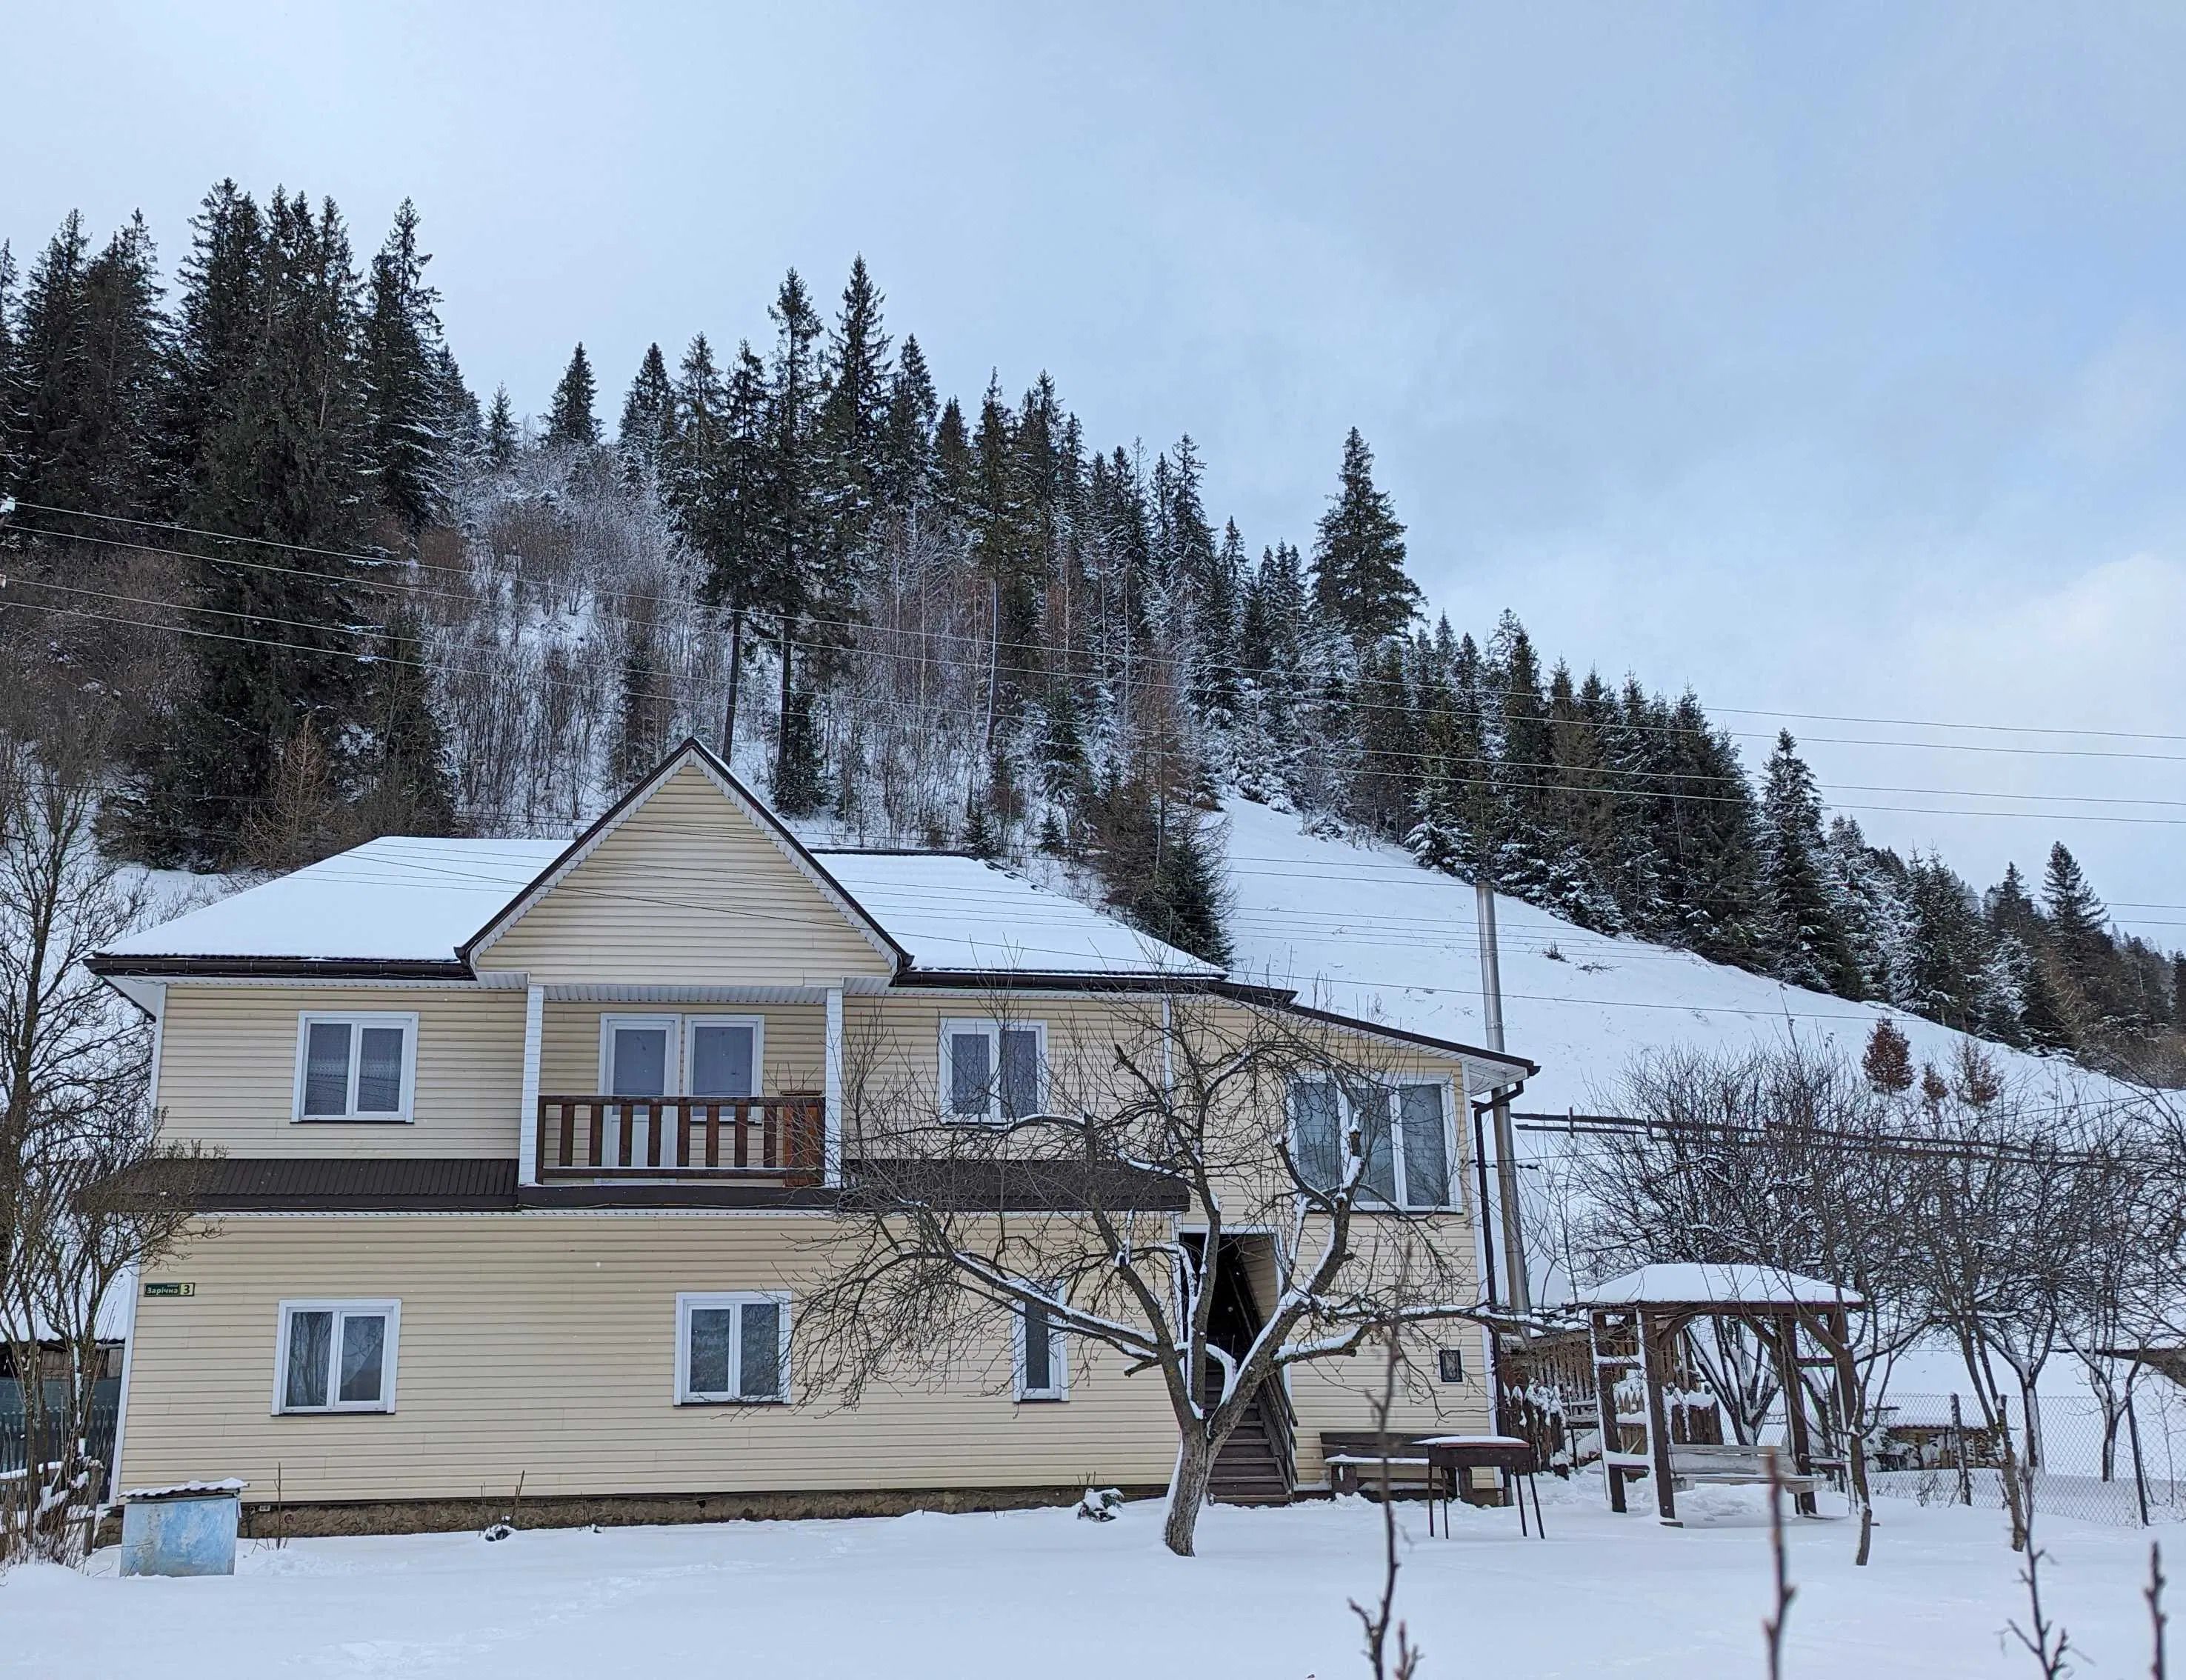 Аренда жилья в лыжный сезон - сколько стоит жилье посуточно в популярных местах - Недвижимость